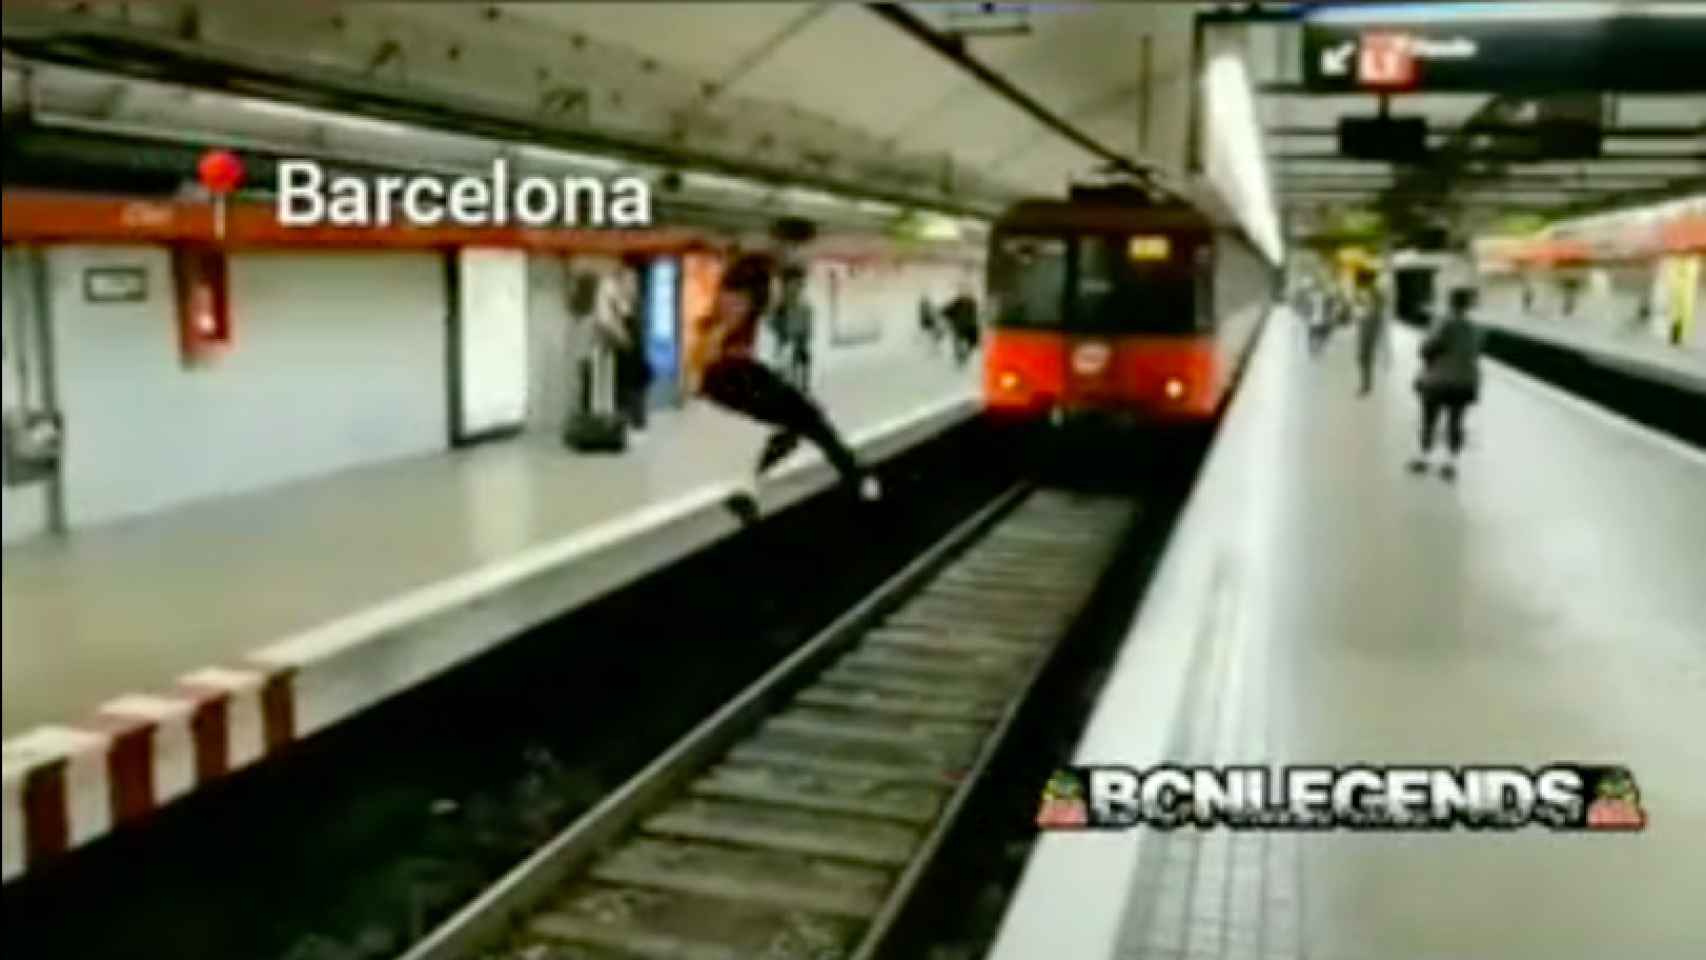 Un joven salta de un andén a otro en el metro de Clot / BCNLEGENDS